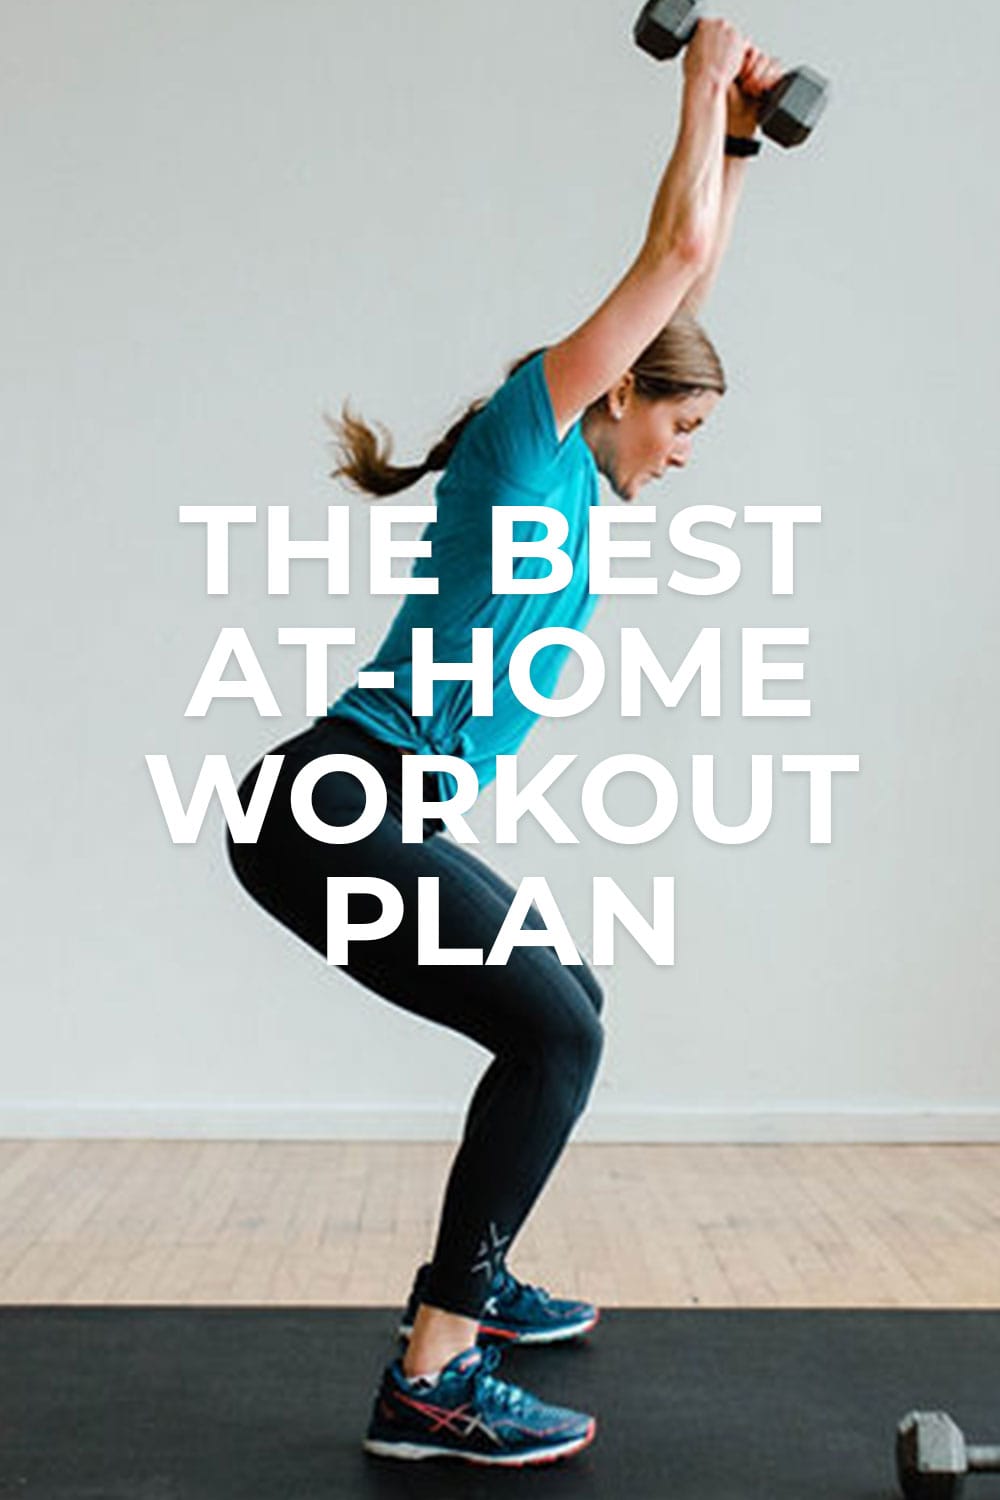 Free 30-Day Home Workout Plan (PDF + Videos) | Nourish Move Love